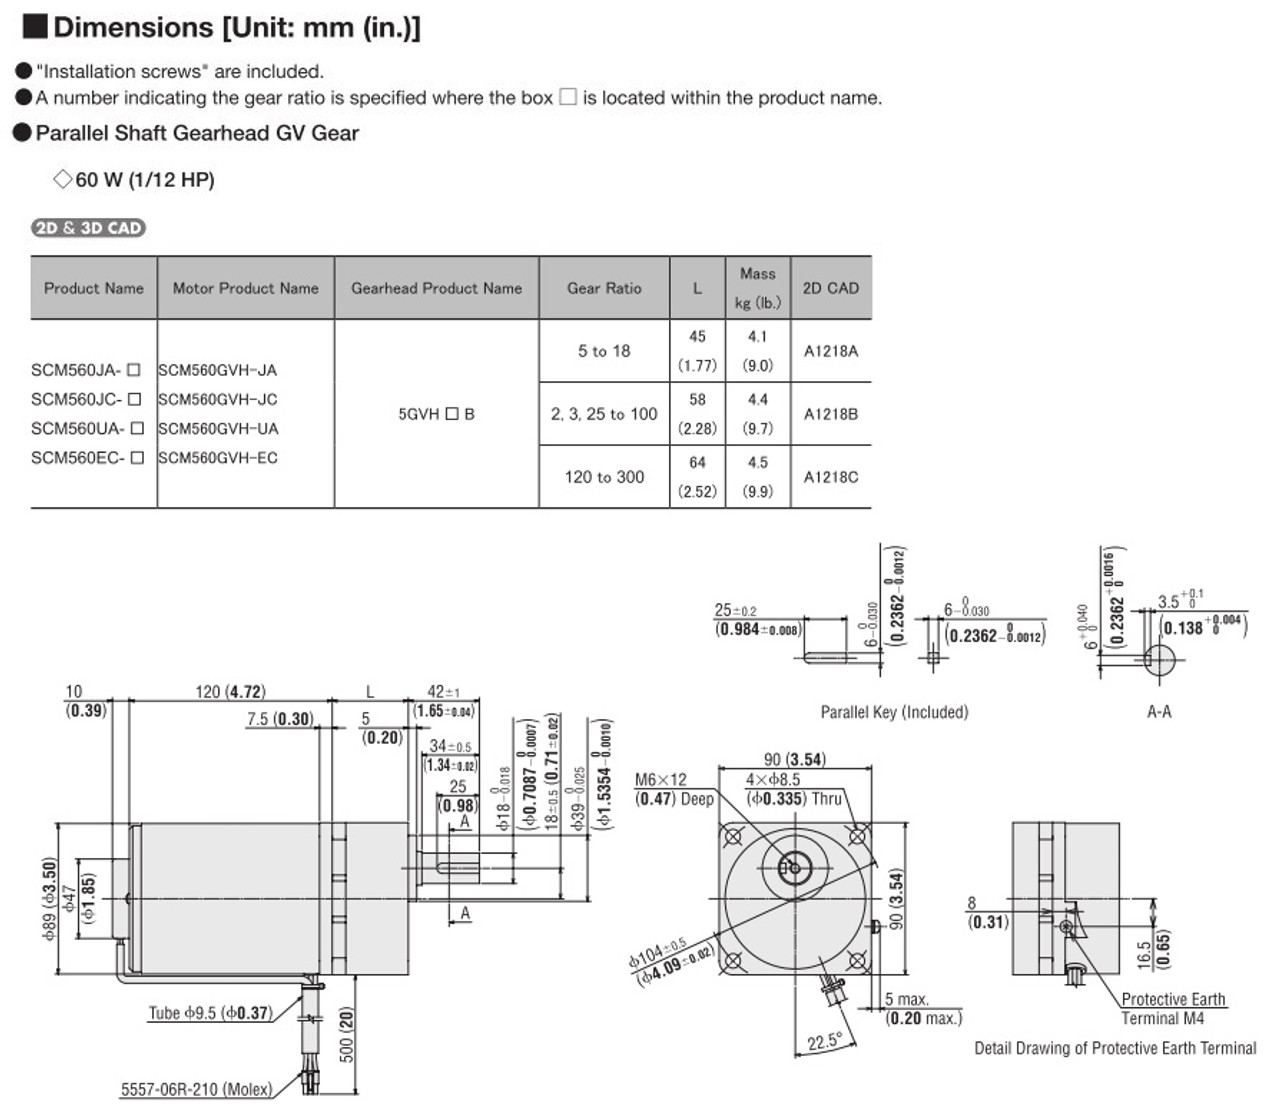 SCM560EC-50 - Dimensions